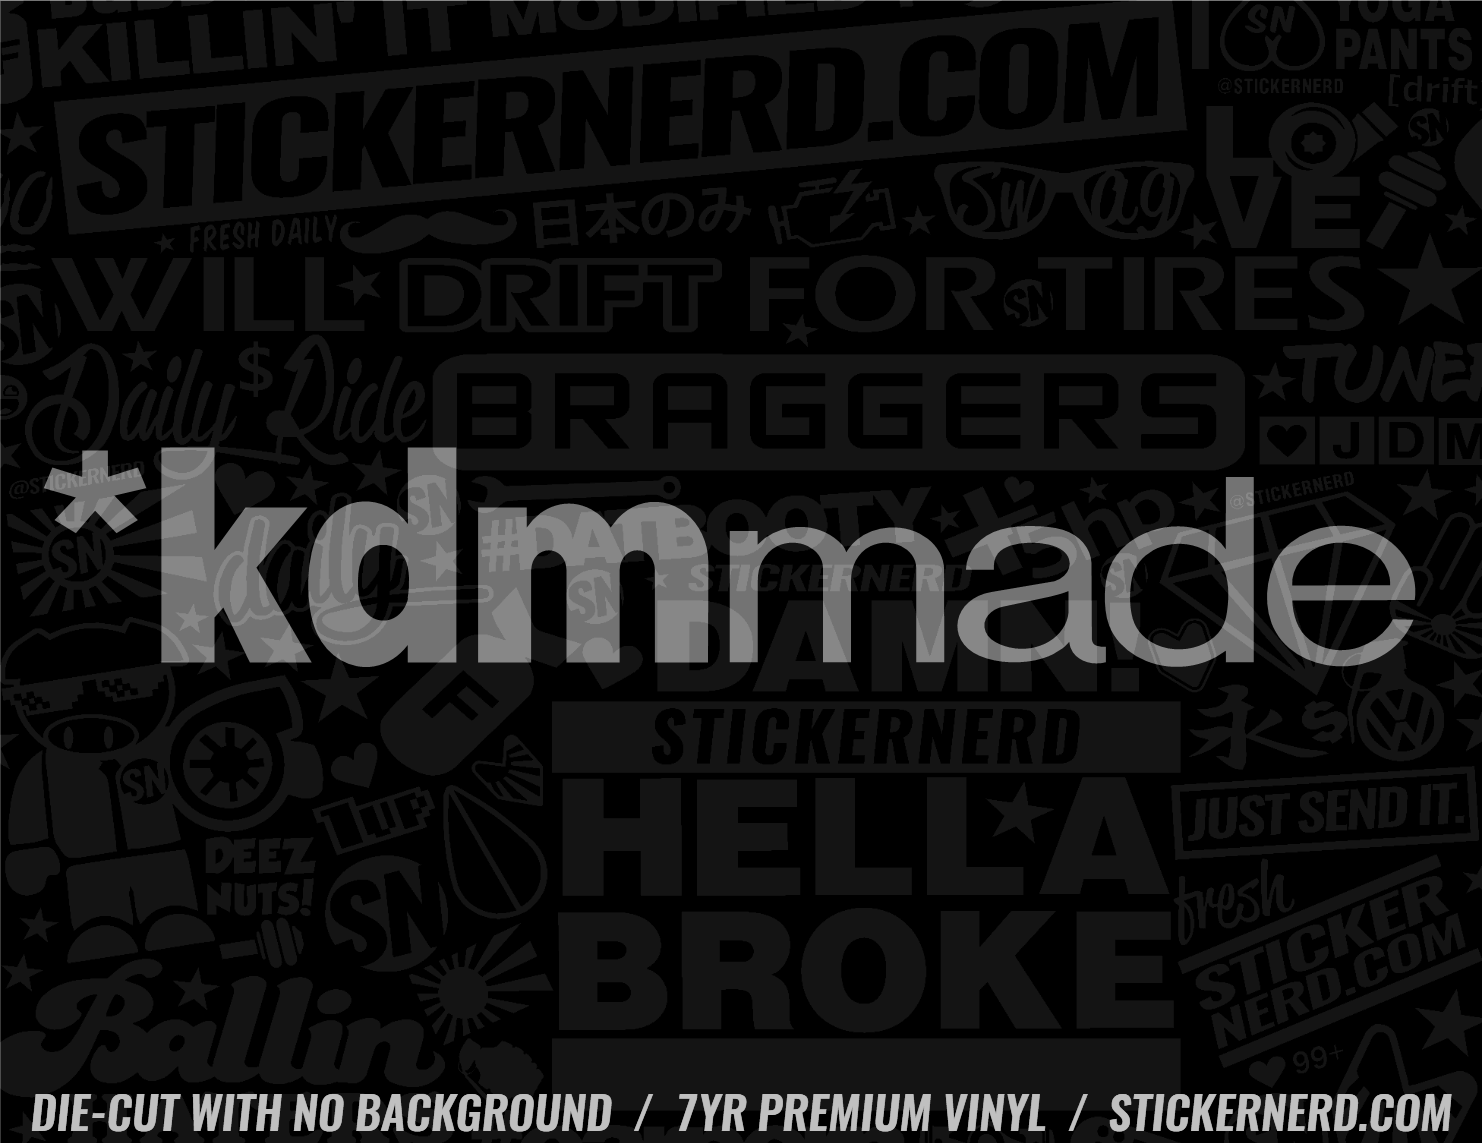 KDM Made Sticker - Decal - STICKERNERD.COM